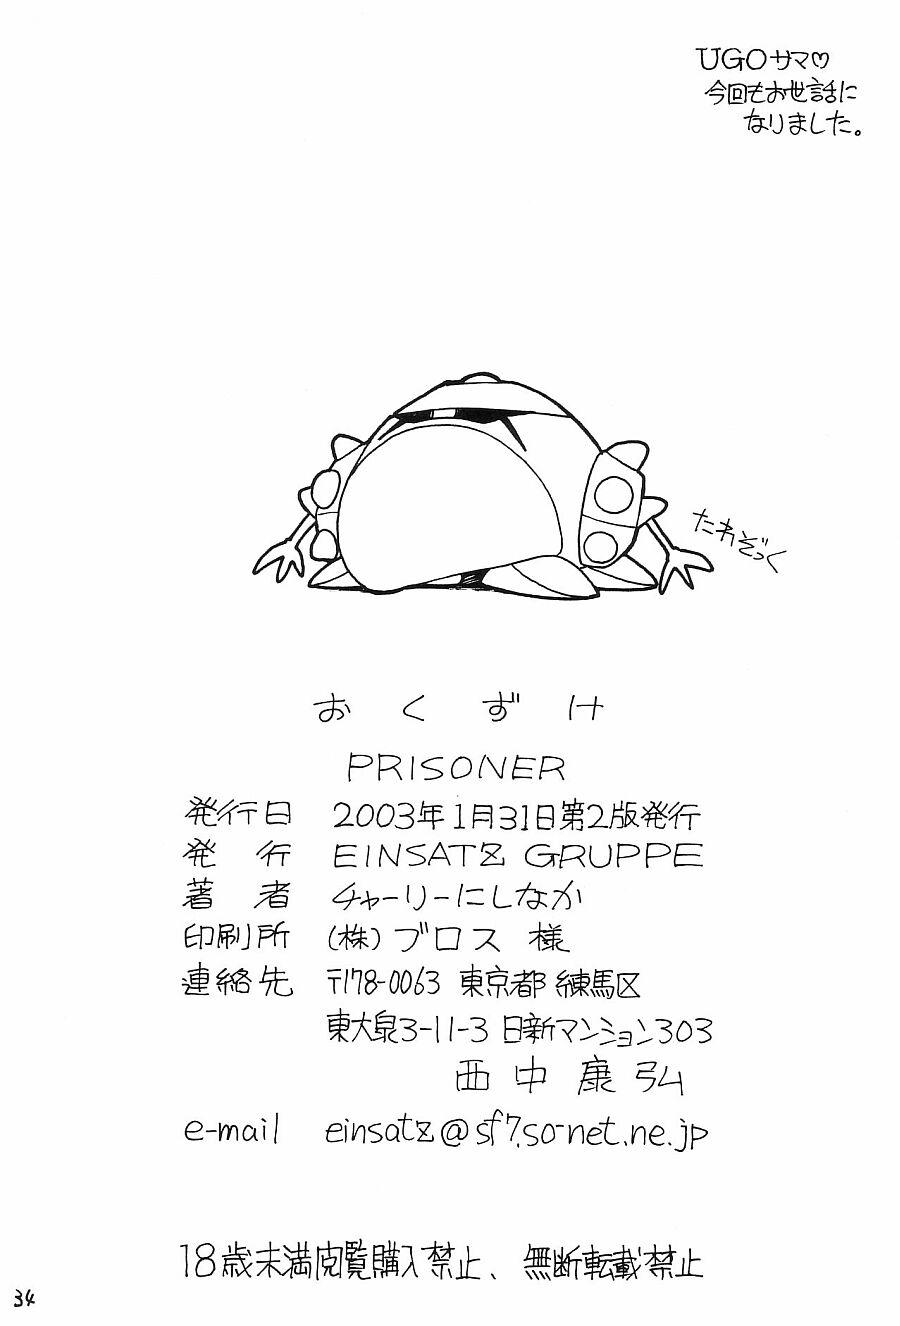 Prisoner 32